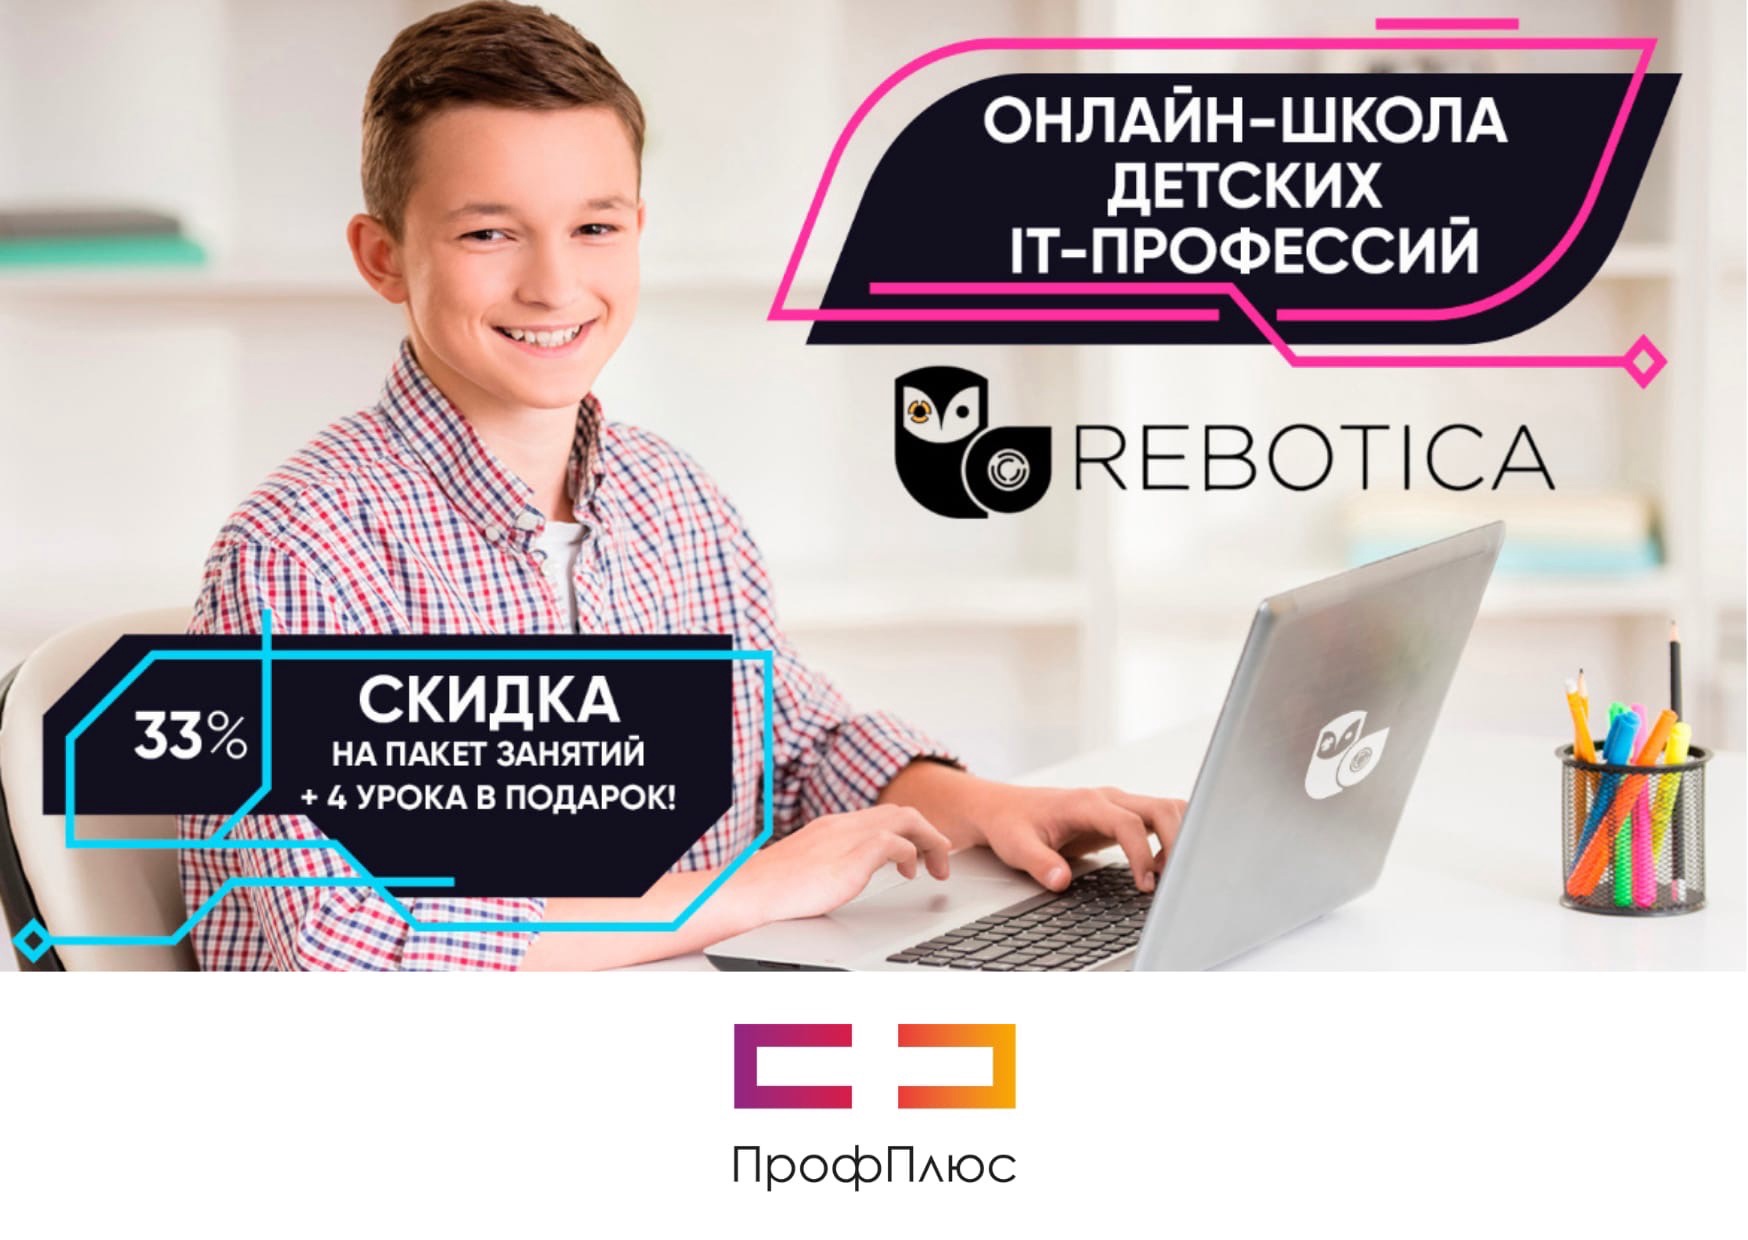 Скидка 33% для членов профсоюза в онлайн школу детских IT-професиий  REBOTICA - ПрофПлюс